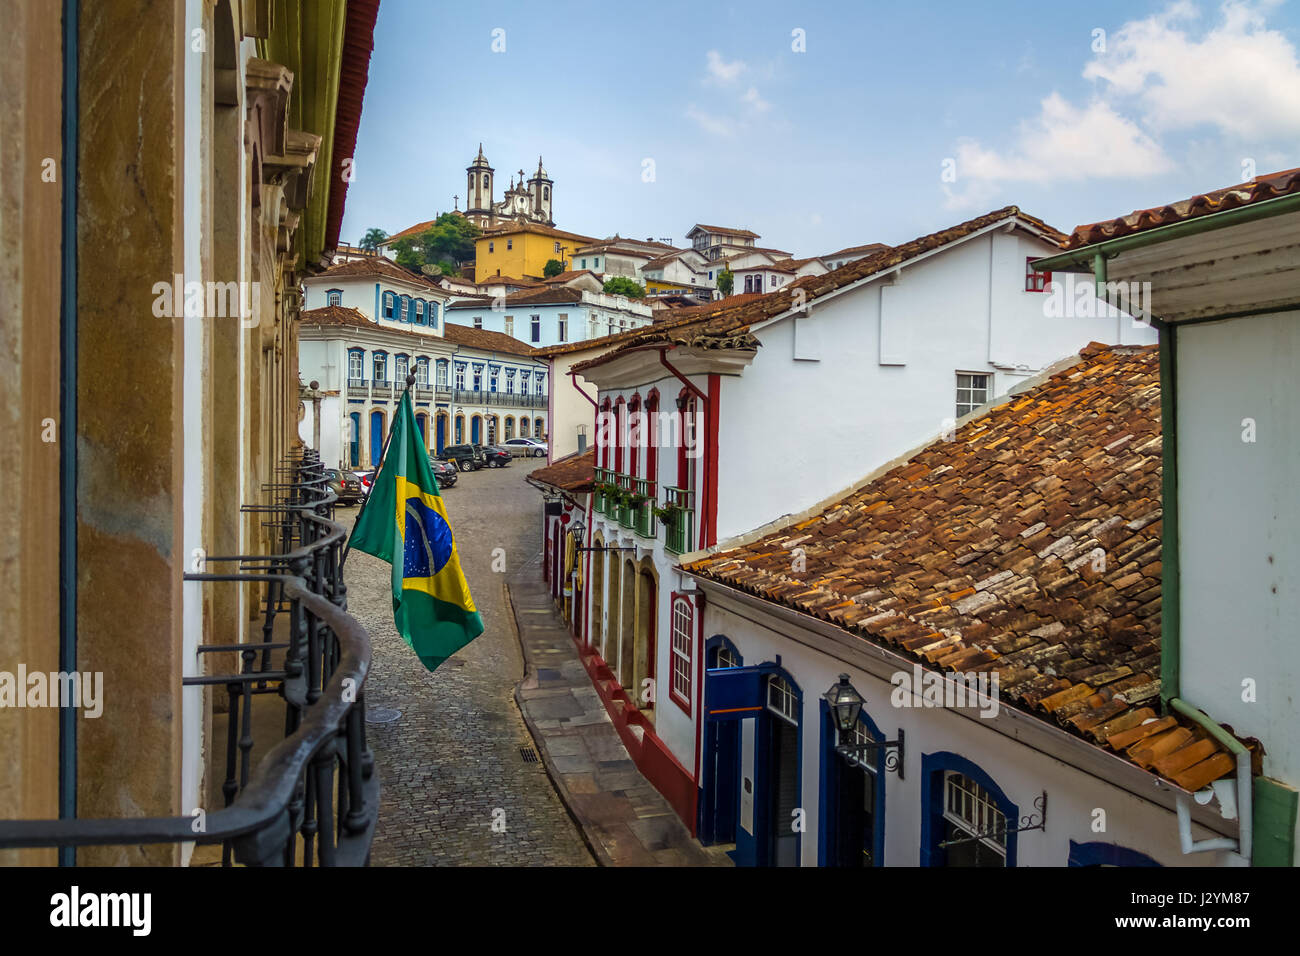 Dans la rue de la ville d'Ouro Preto avec drapeau brésilien - Ouro Preto, Minas Gerais, Brésil Banque D'Images